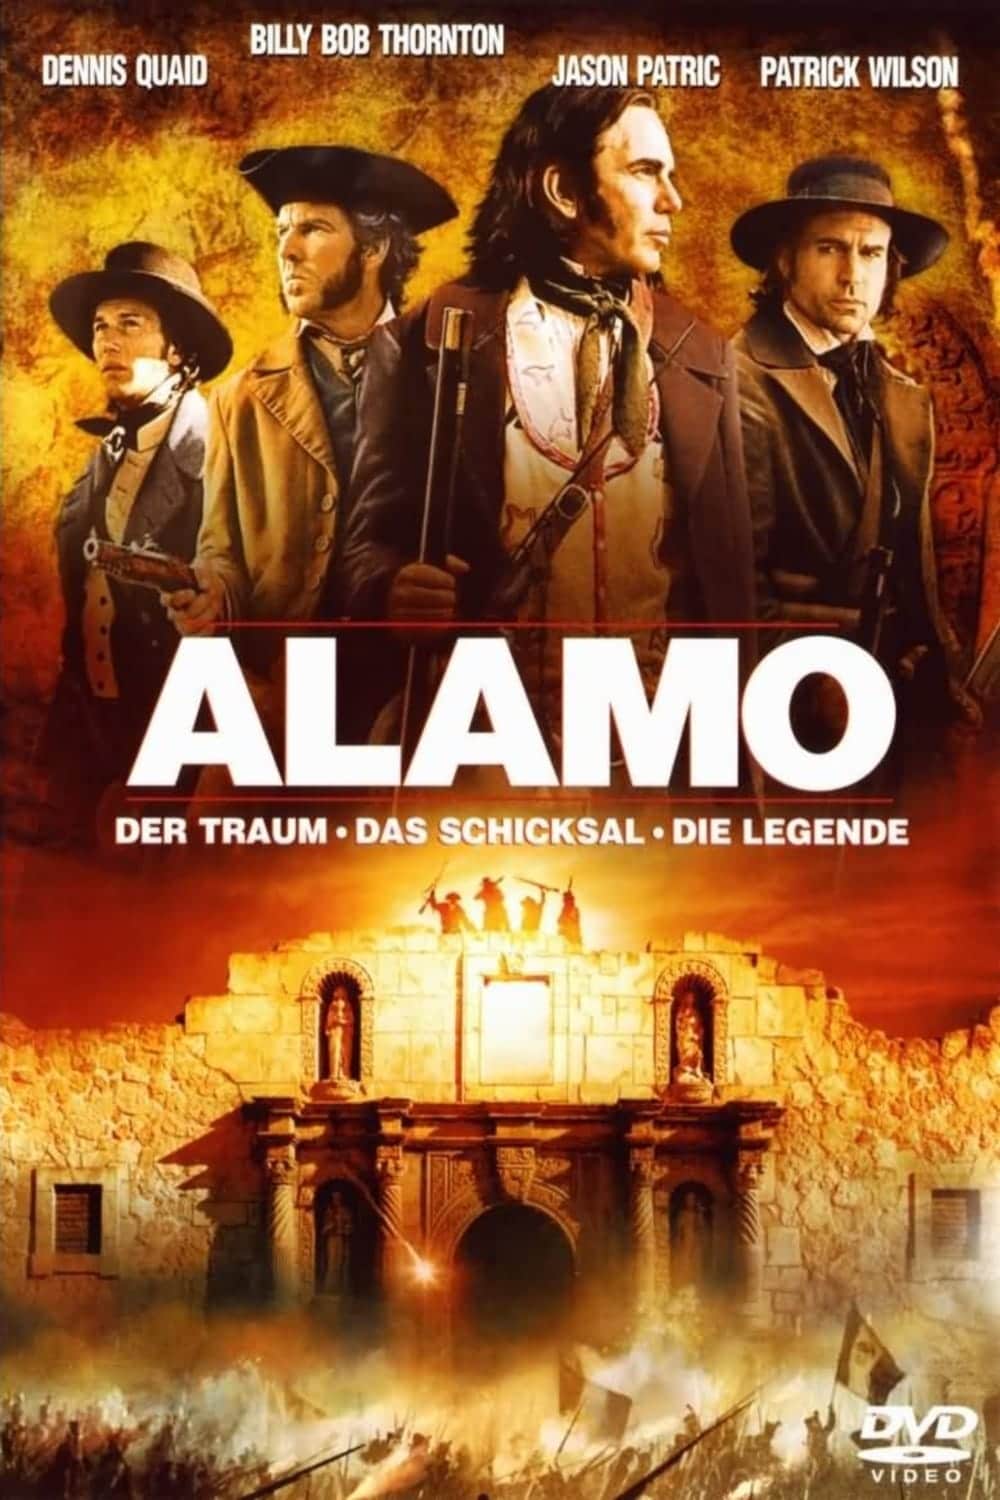 Plakat von "Alamo - Der Traum, das Schicksal, die Legende"